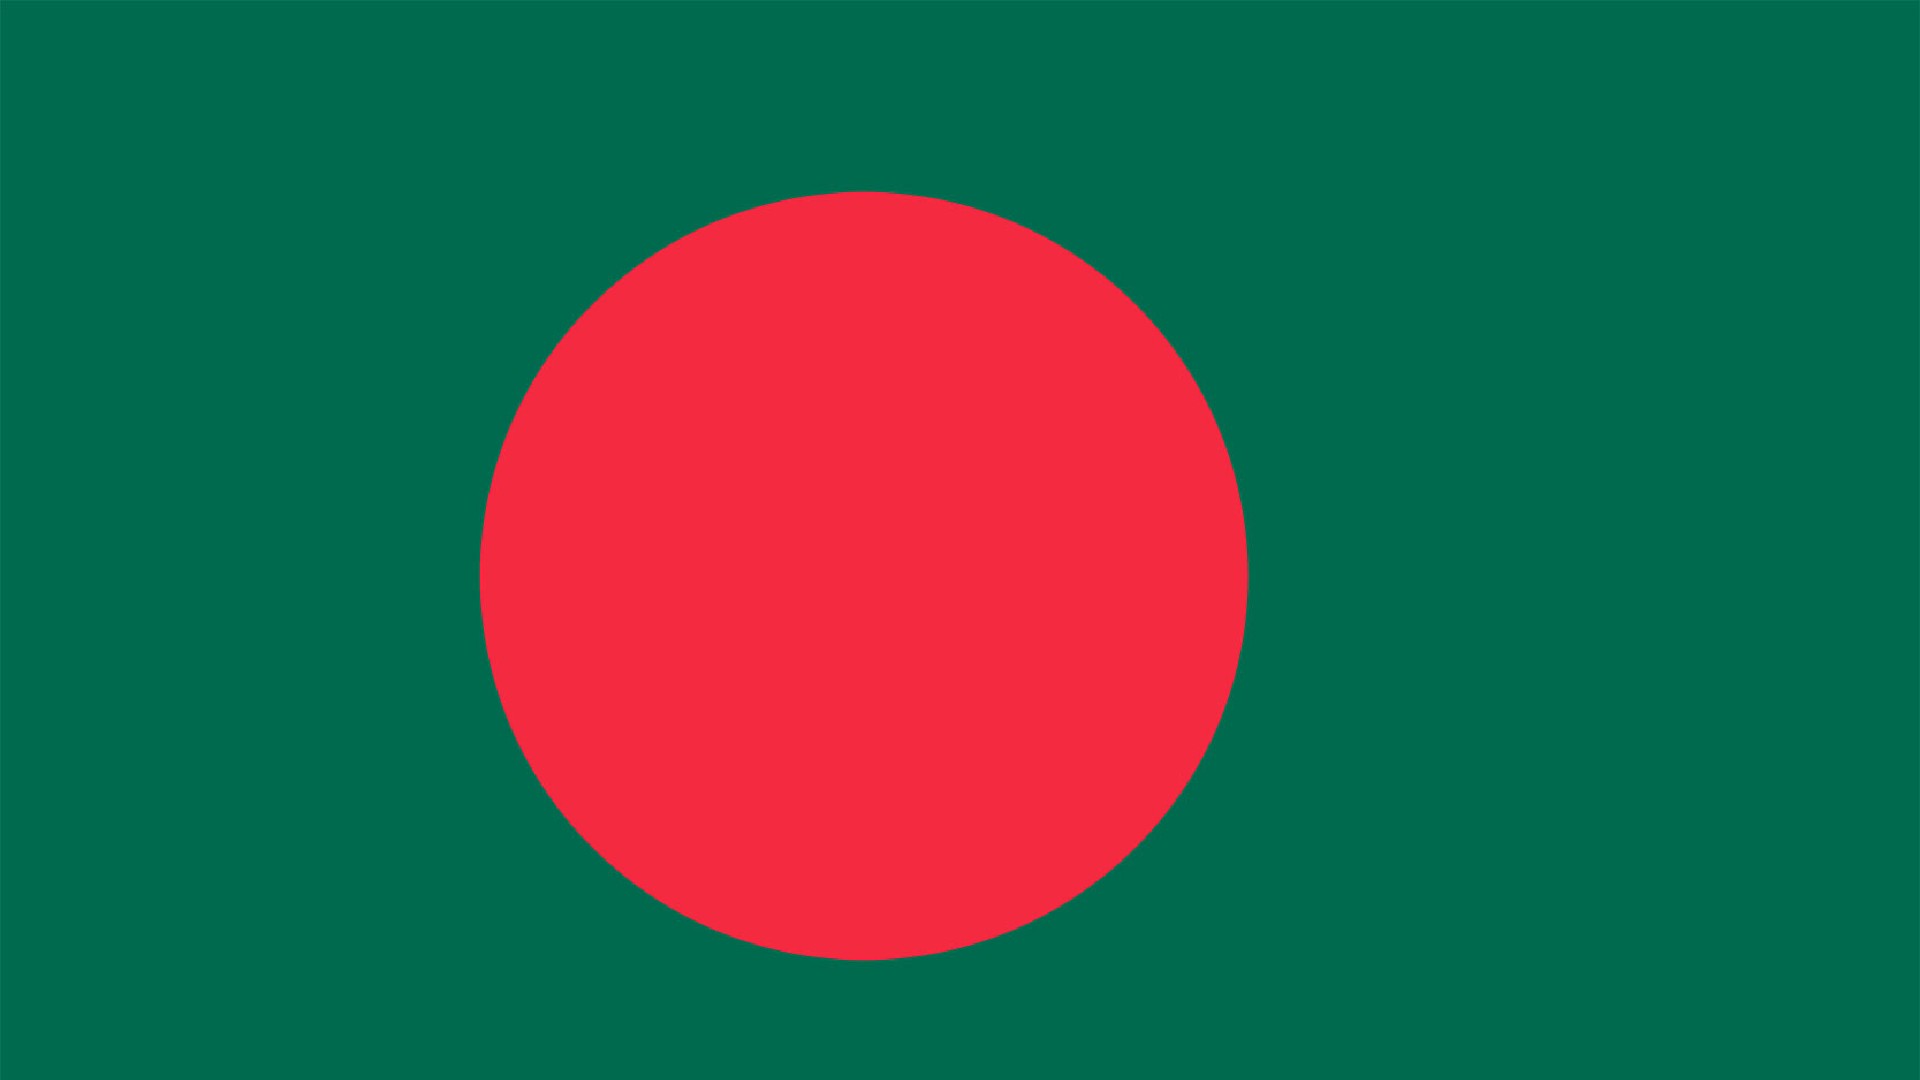 An image of the flag of Bangladesh